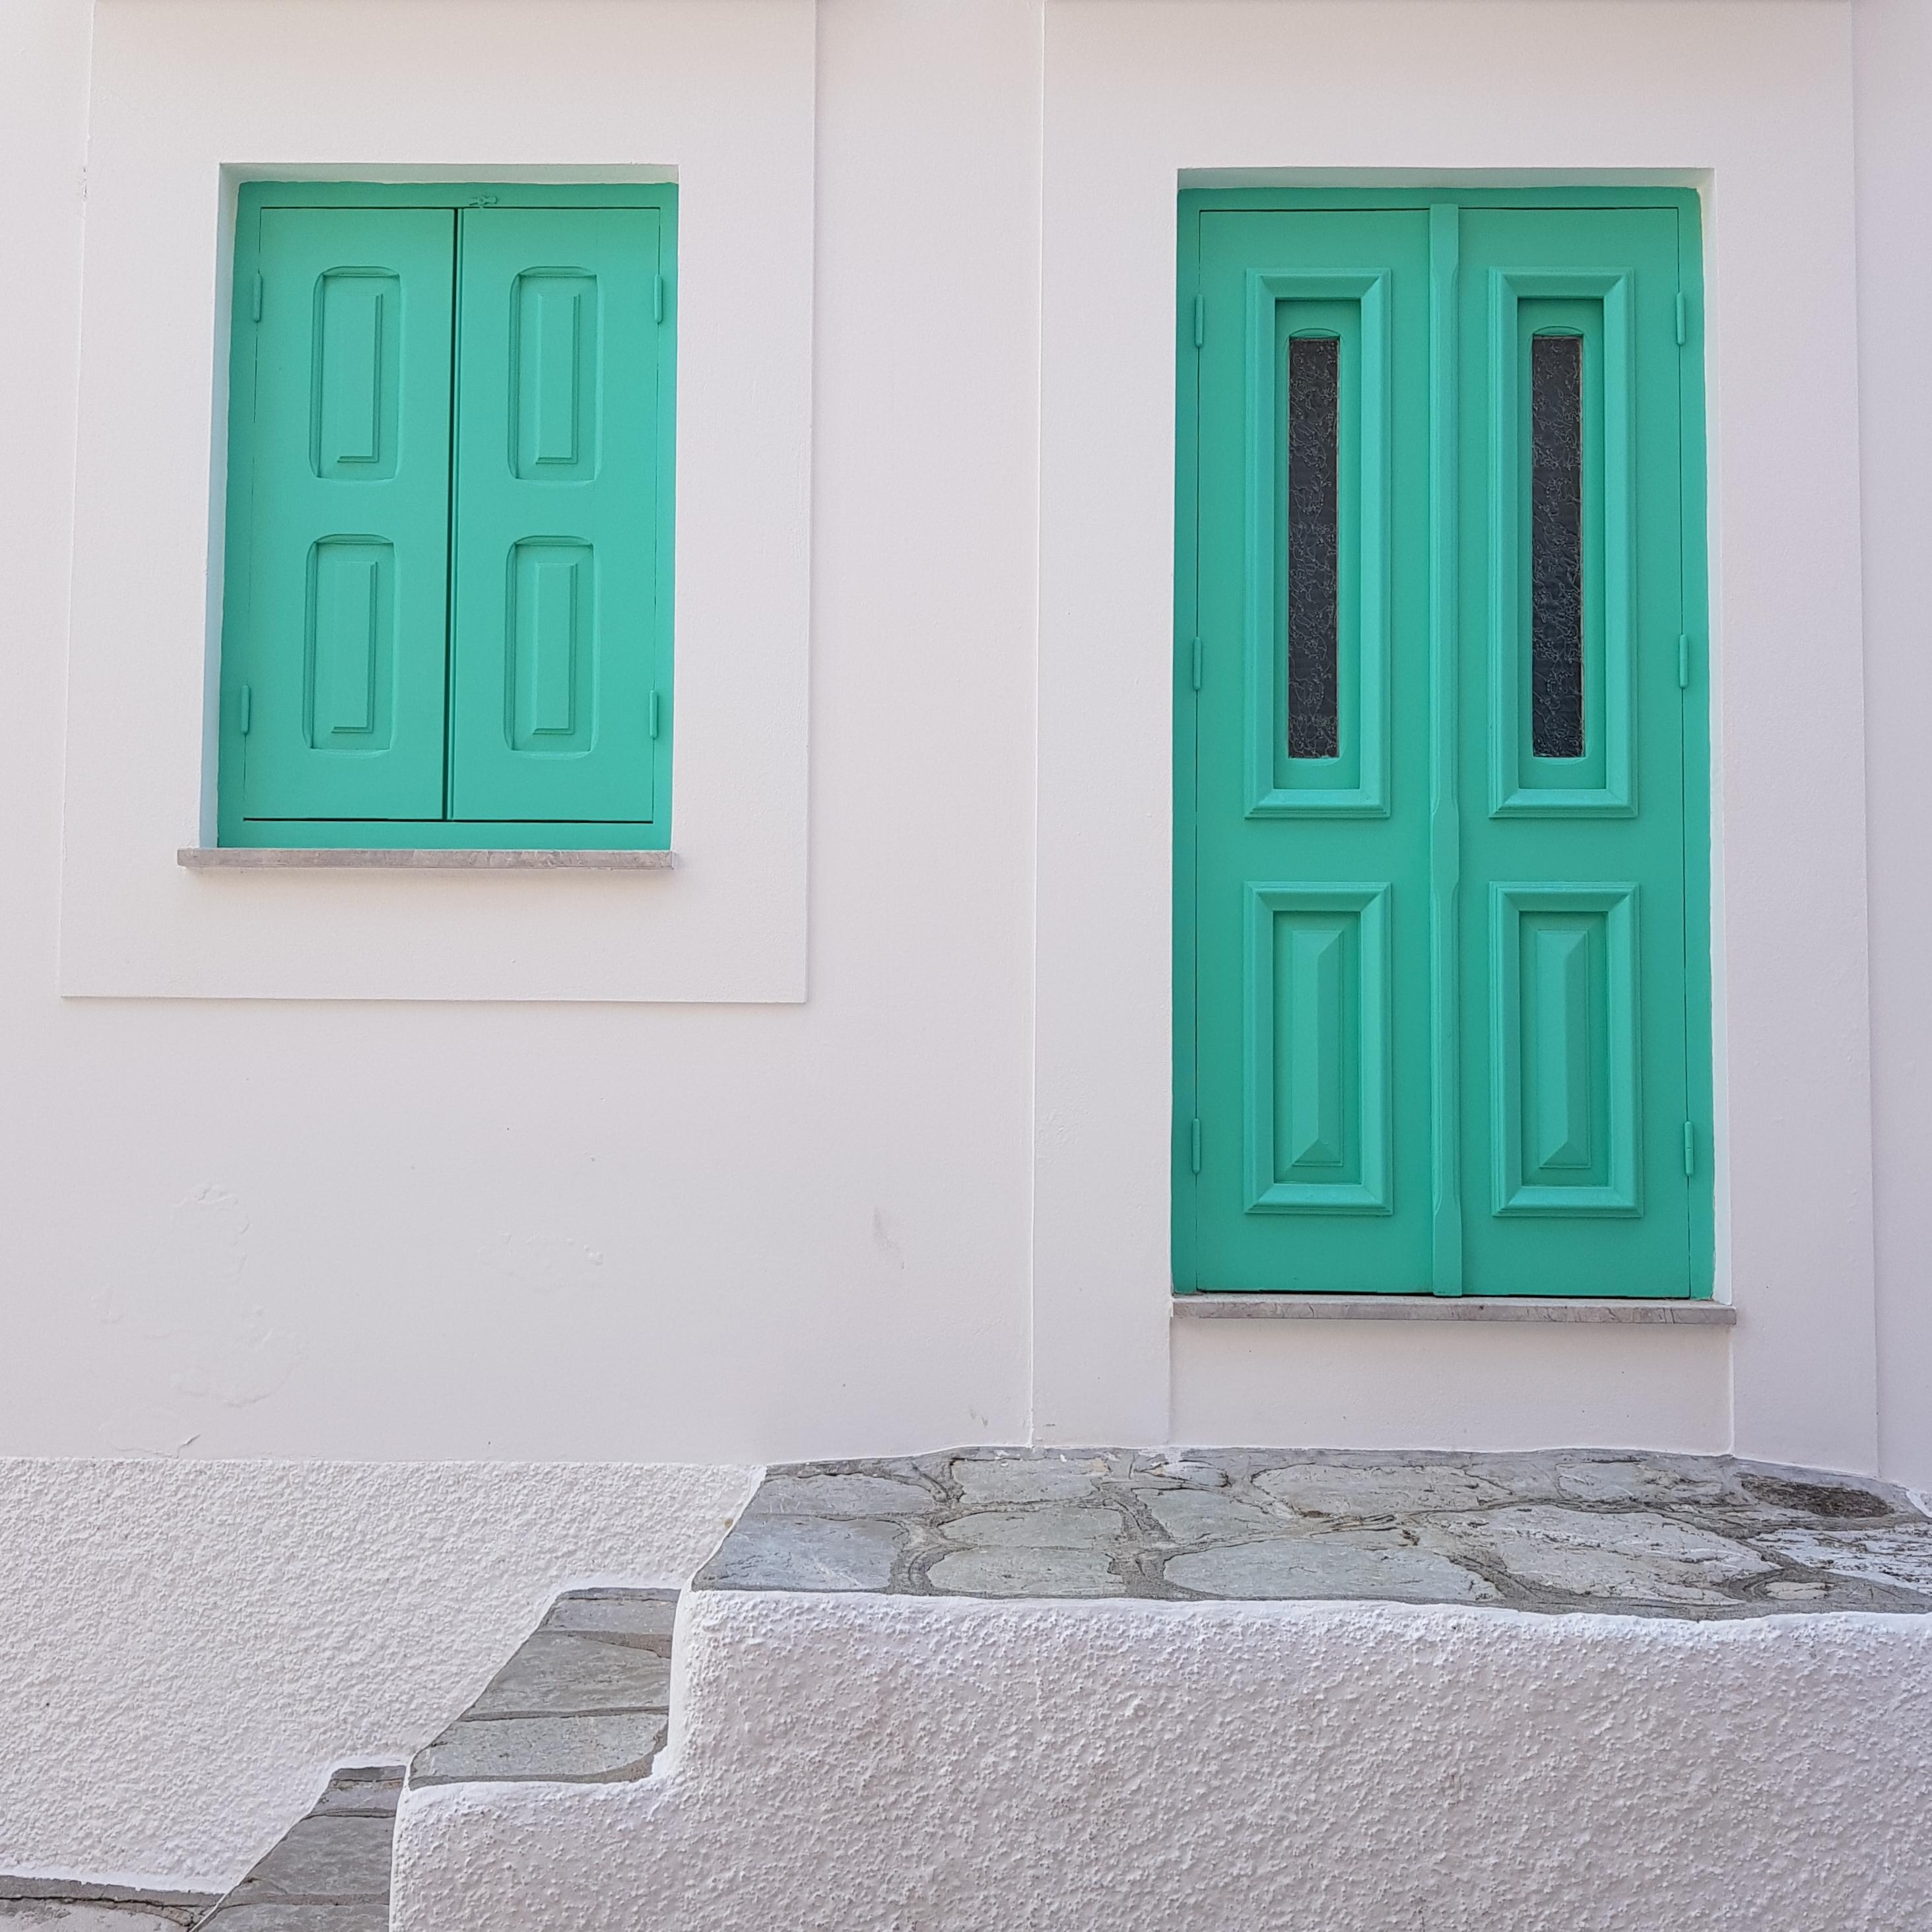 Ich liebe mint...

#symiisland #greece #door #mint